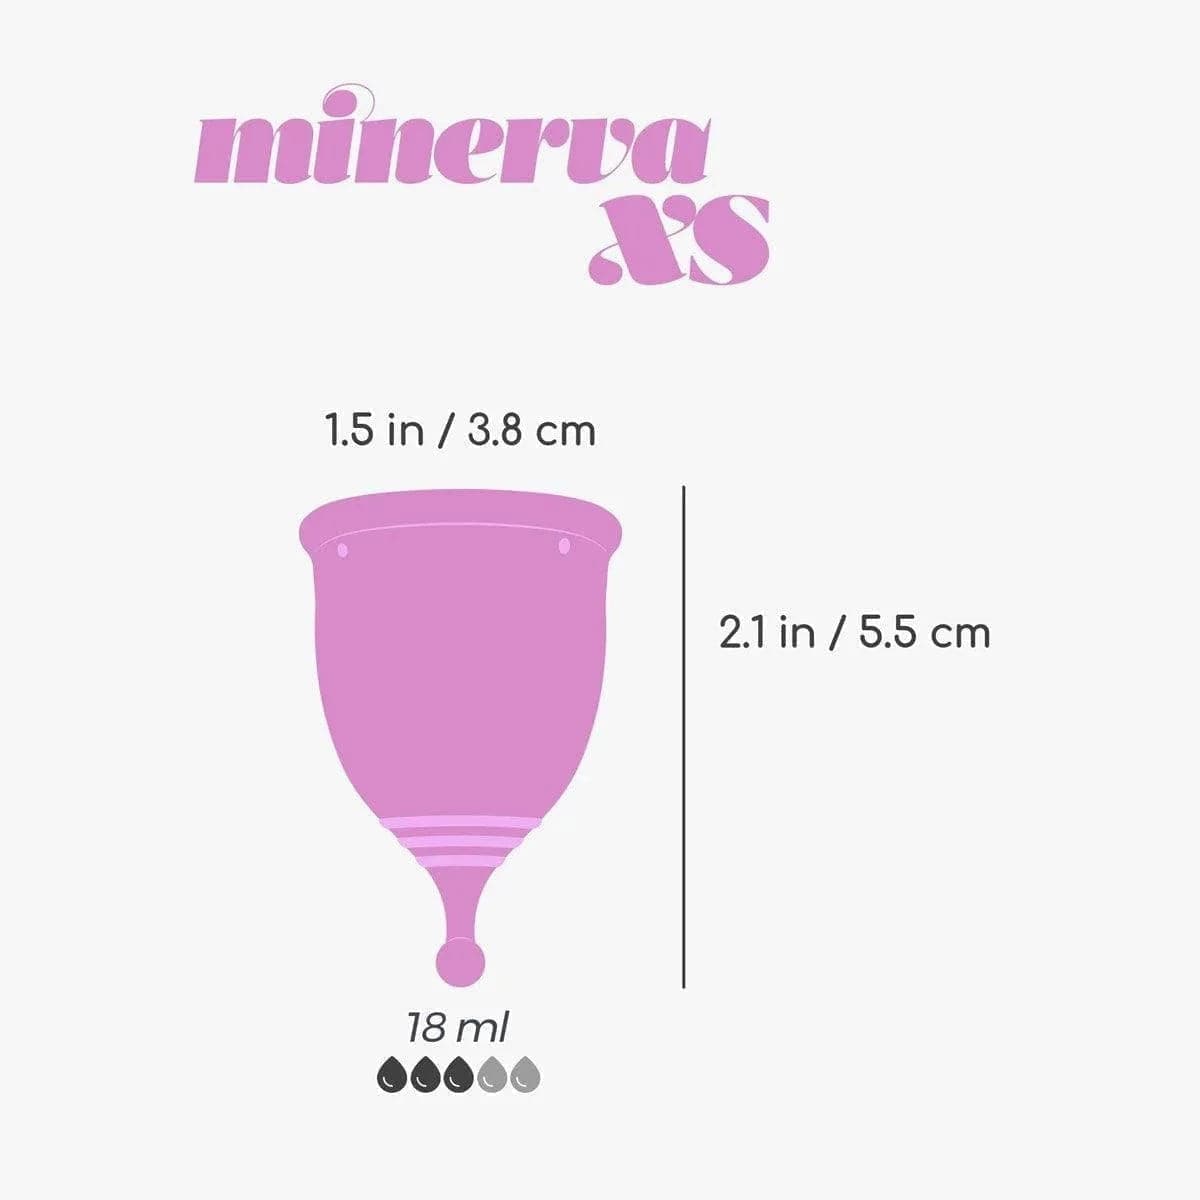 Copo Menstrual Minerva XS 100% Silicone, 18ml, 5.5cm Ø3.8cm